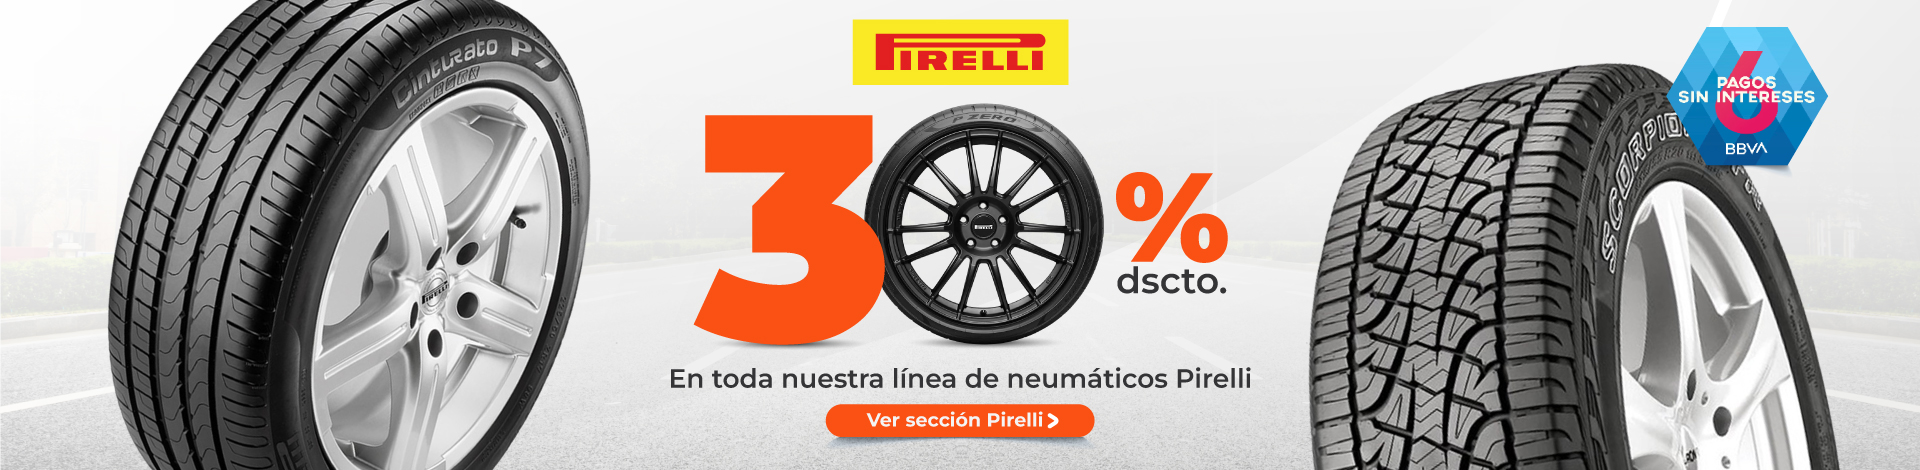 Llantas-Pirelli-tienda-oficial-Juntoz.jpg